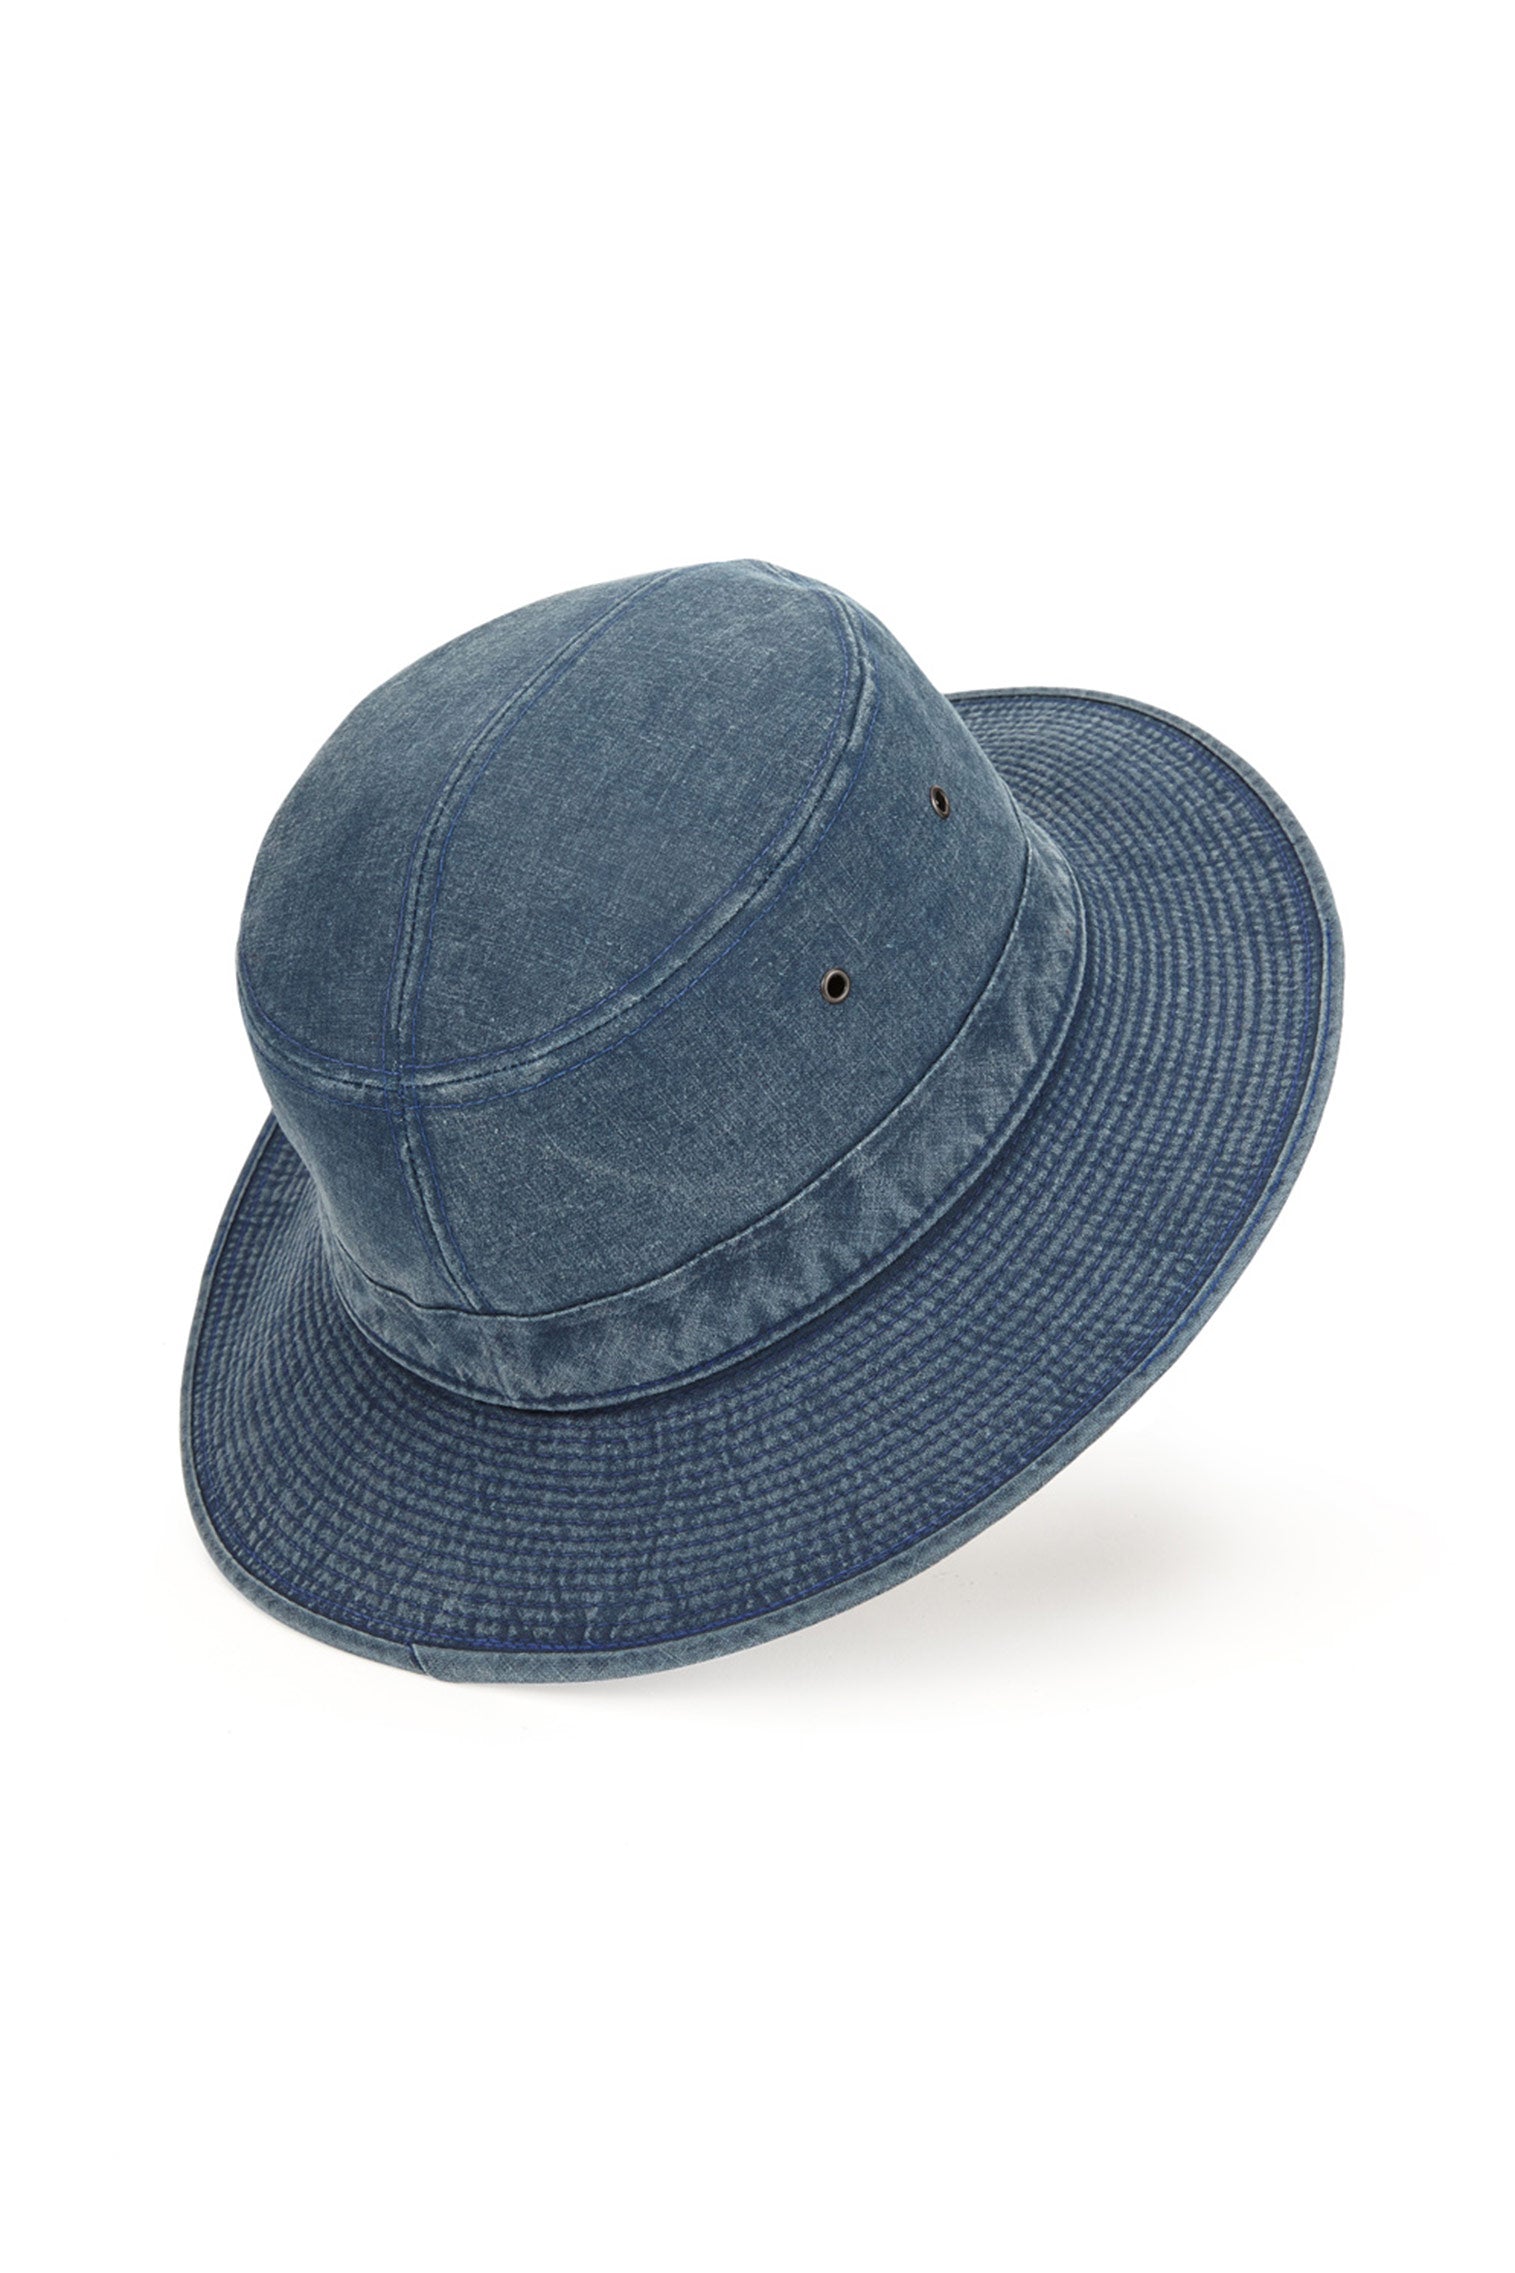 Capri Rollable Hat - All Ready to Wear - Lock & Co. Hatters London UK